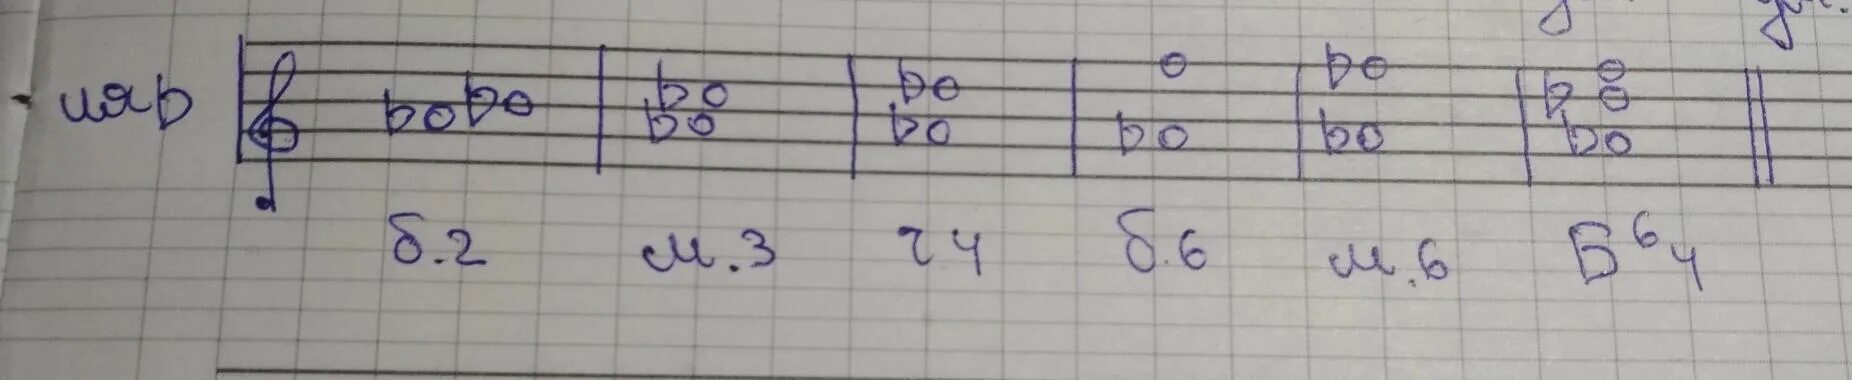 Б2 б6. Б6 от ля бемоль. Построить от звука ля: б3 м3 б2 ч4 м53 б53. От ля бемоль б6 м6 б64 м64. От звука ля построить м6.